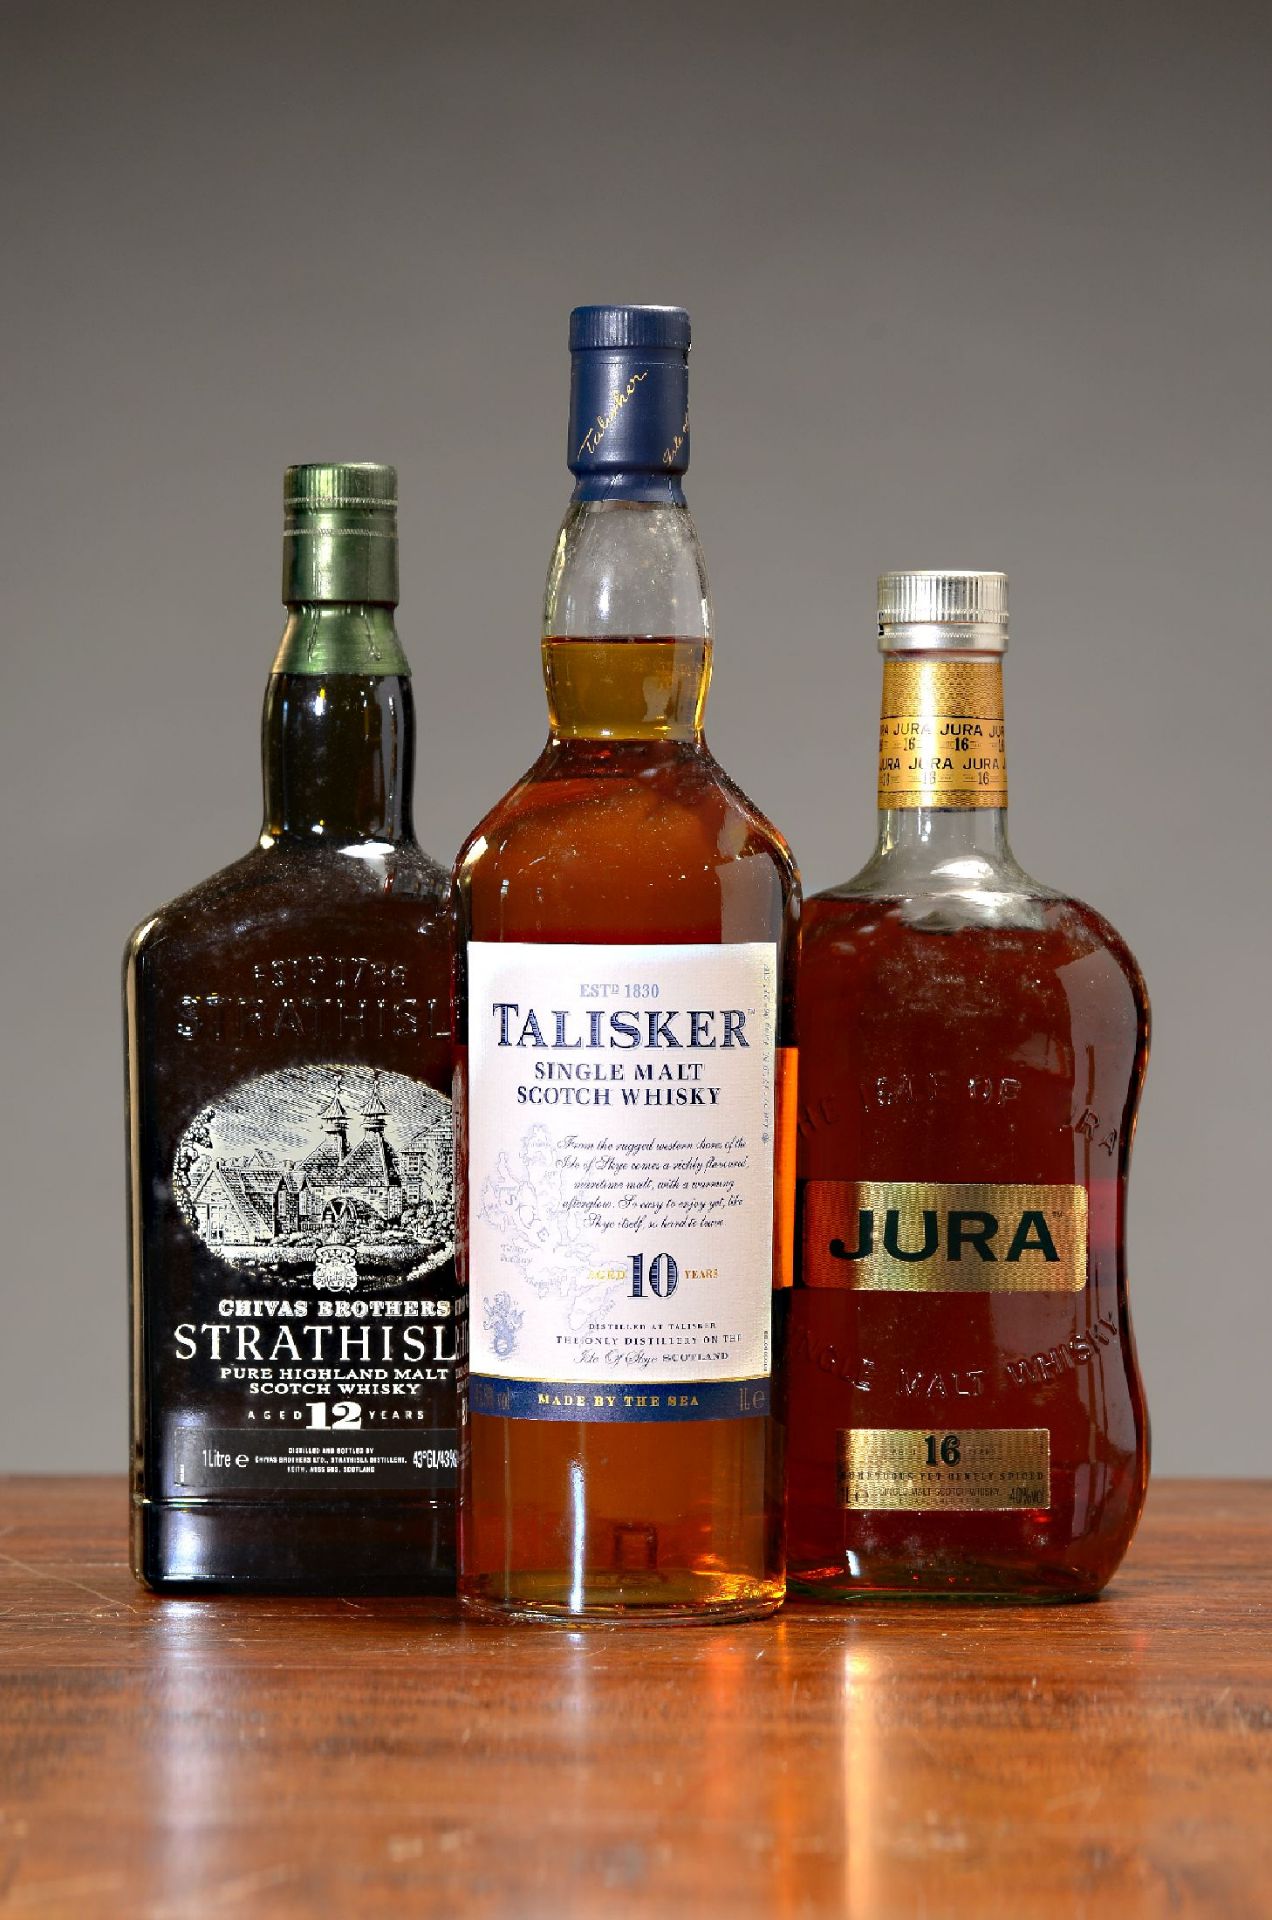 3 Flaschen schottische single malt Whiskys,  1x